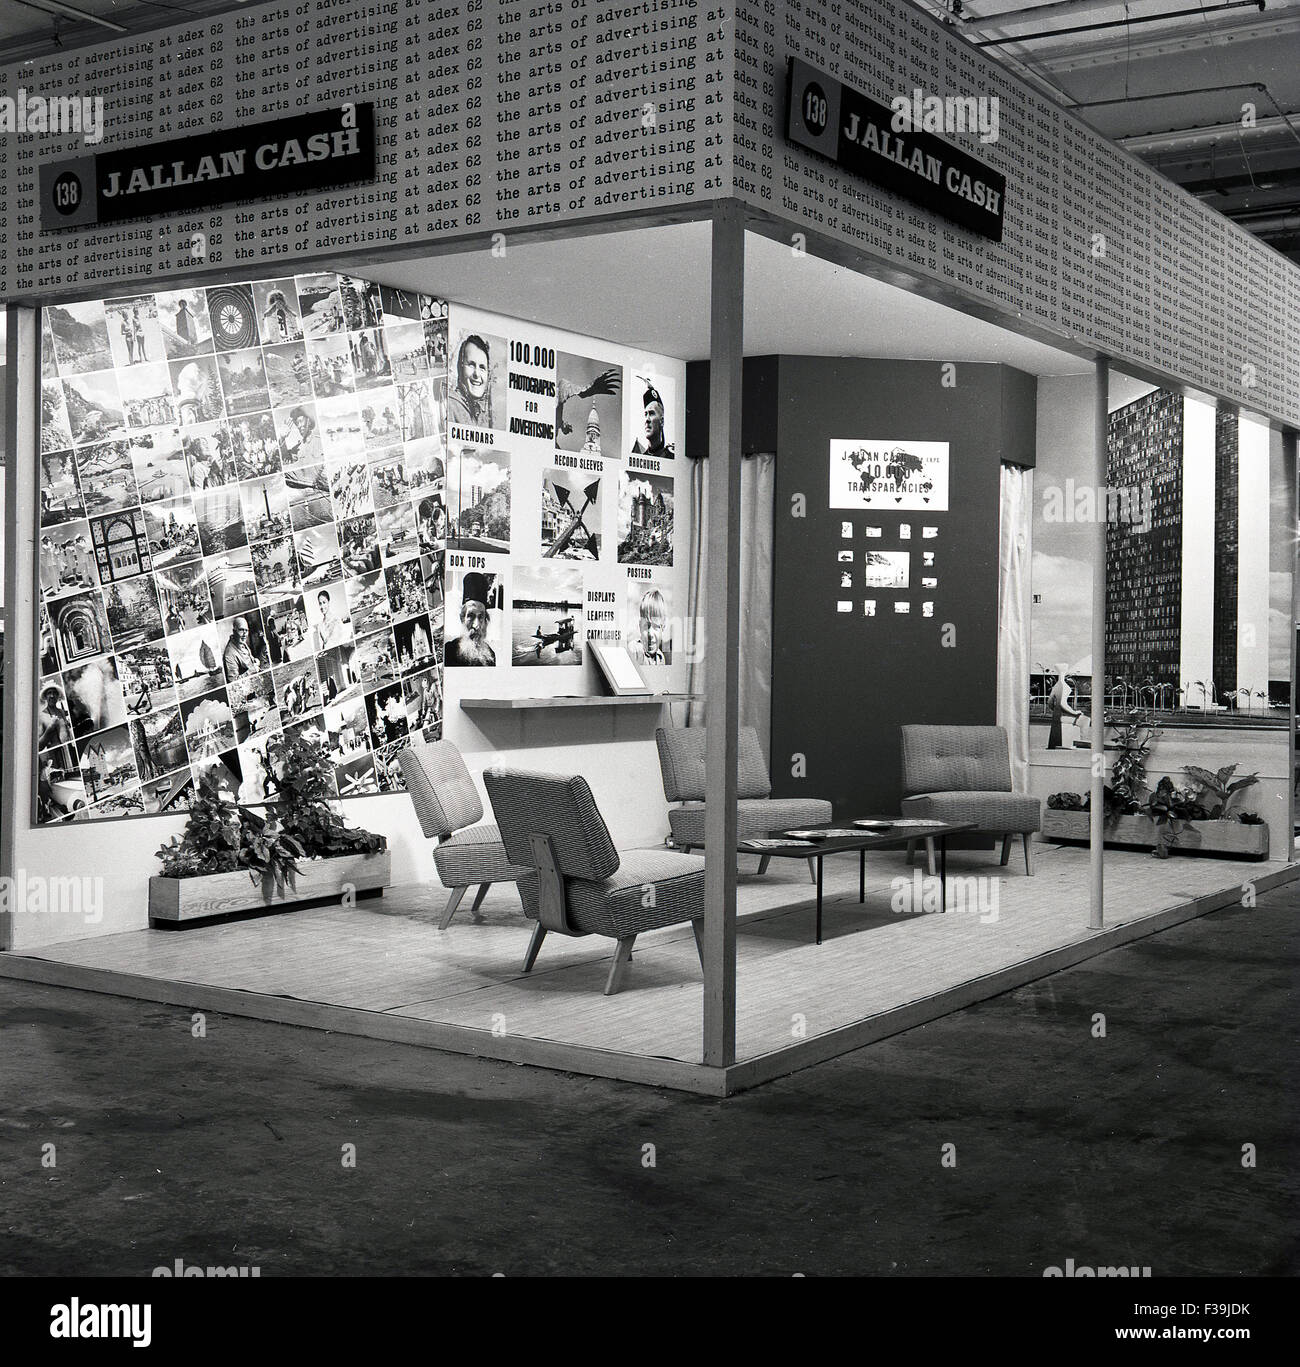 Storico, 1962, l'immagine mostra una mostra al coperto stand del principale fotografo britannico di viaggio di questa epoca, J Allan Cash (1902-1974) al salone pubblicitario adex. Foto Stock